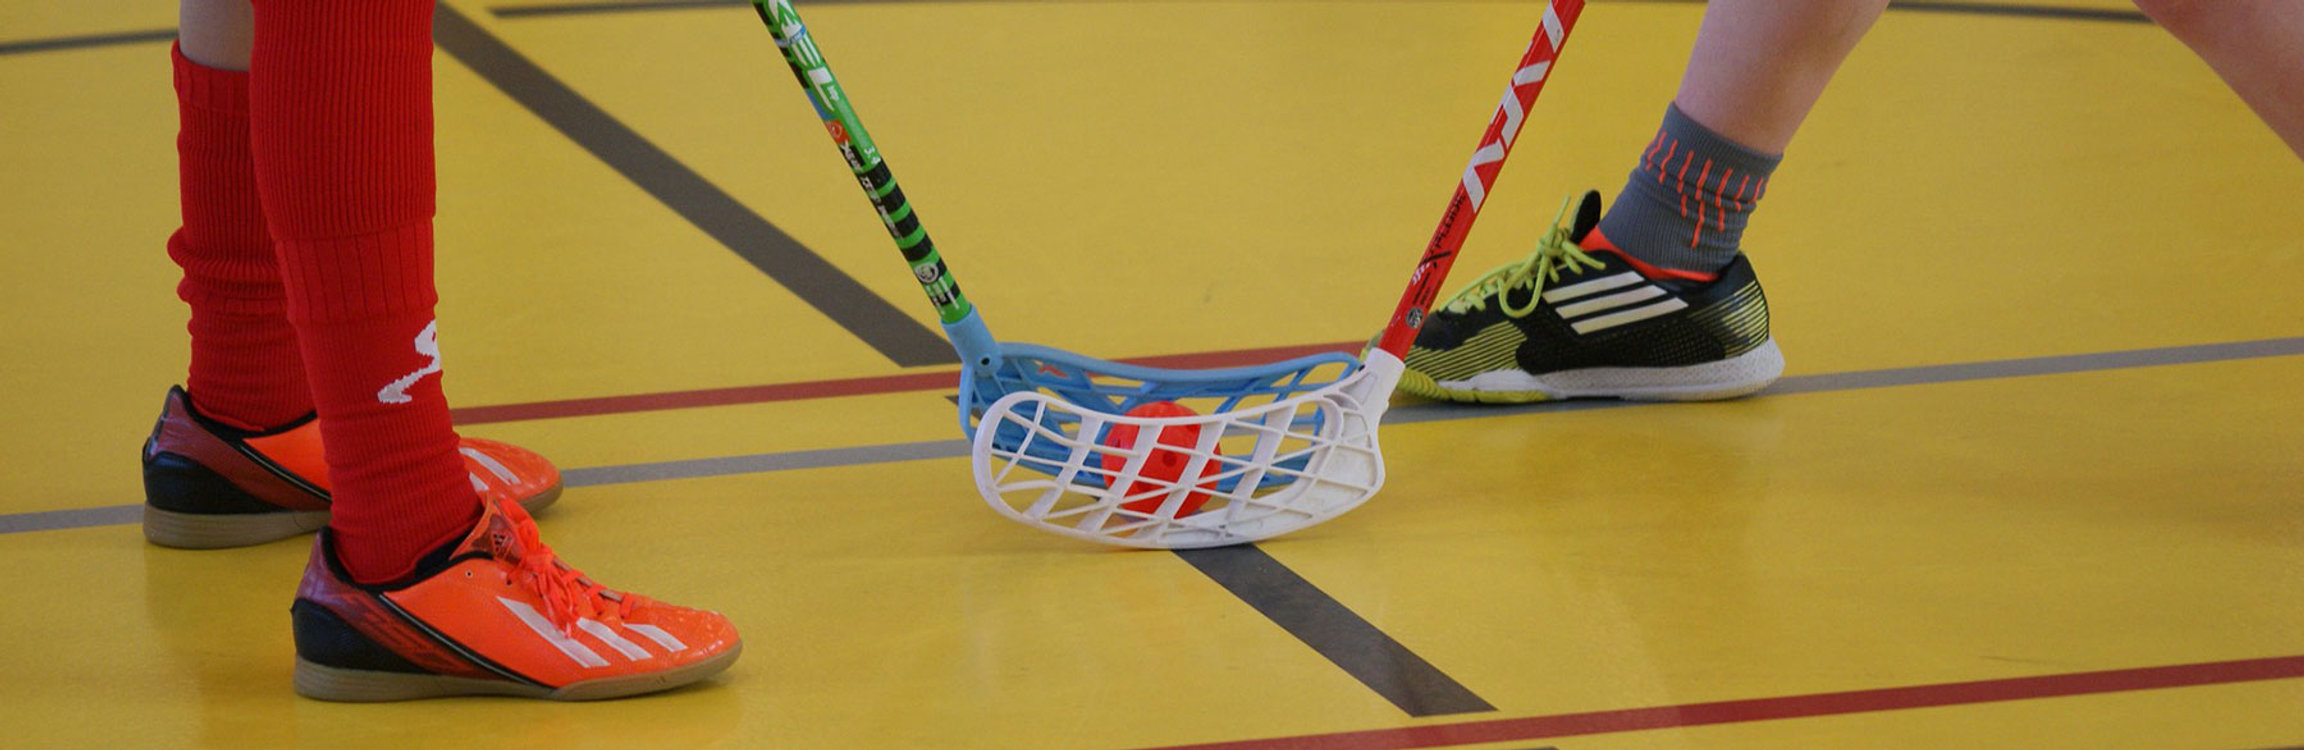 Unihockey-Plausch für Erwachsene - jeden Dienstagabend